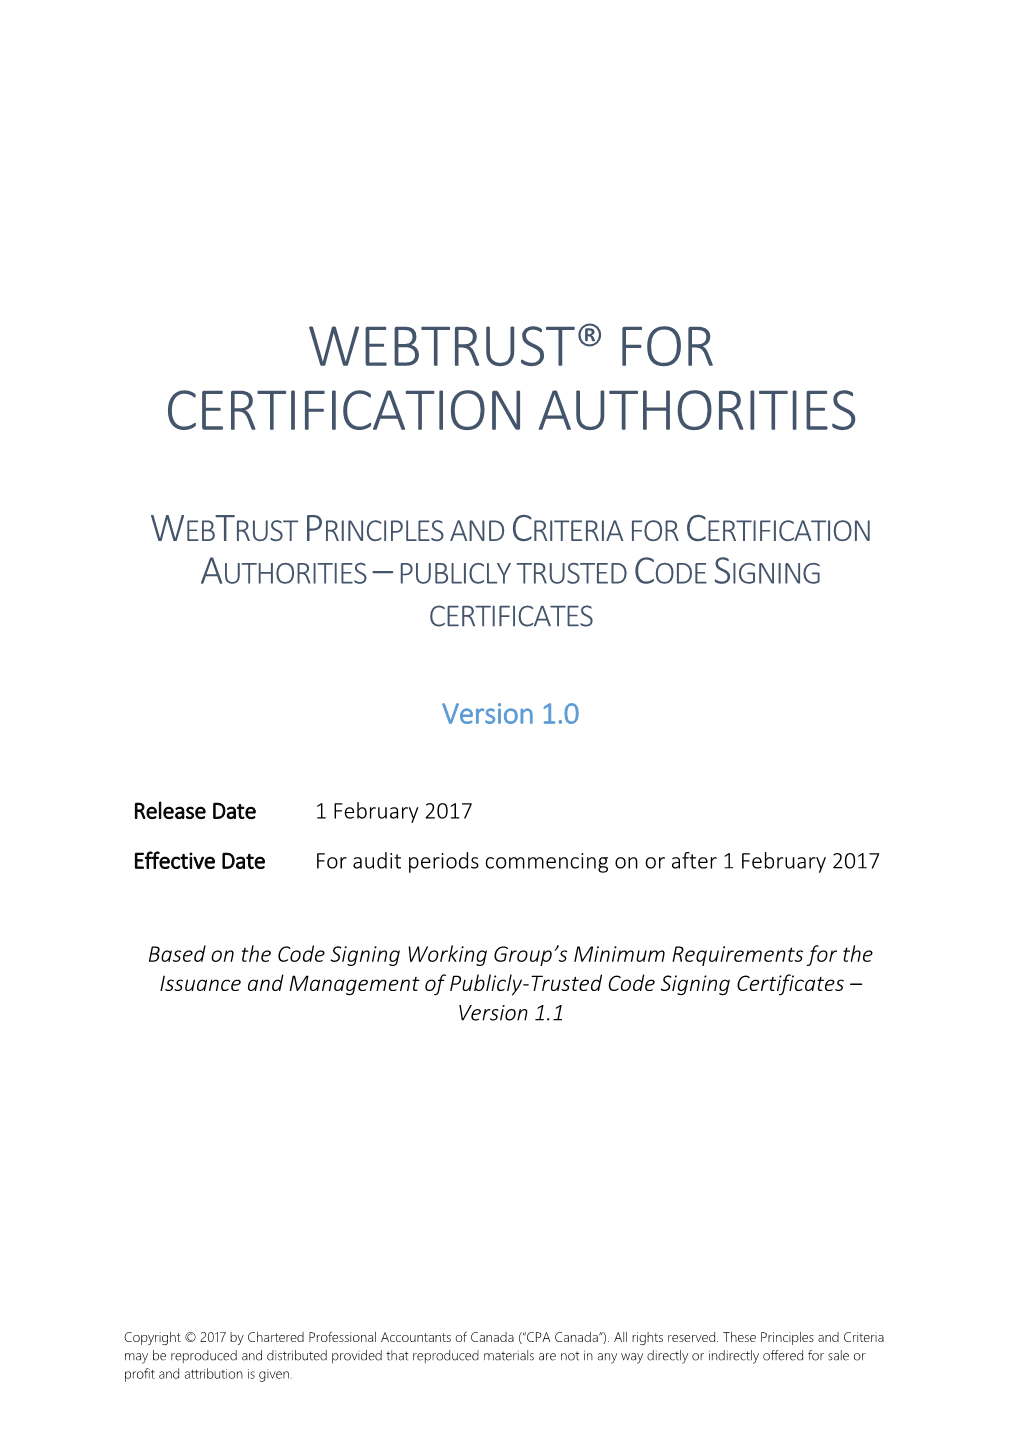 Webtrust® for Certification Authorities